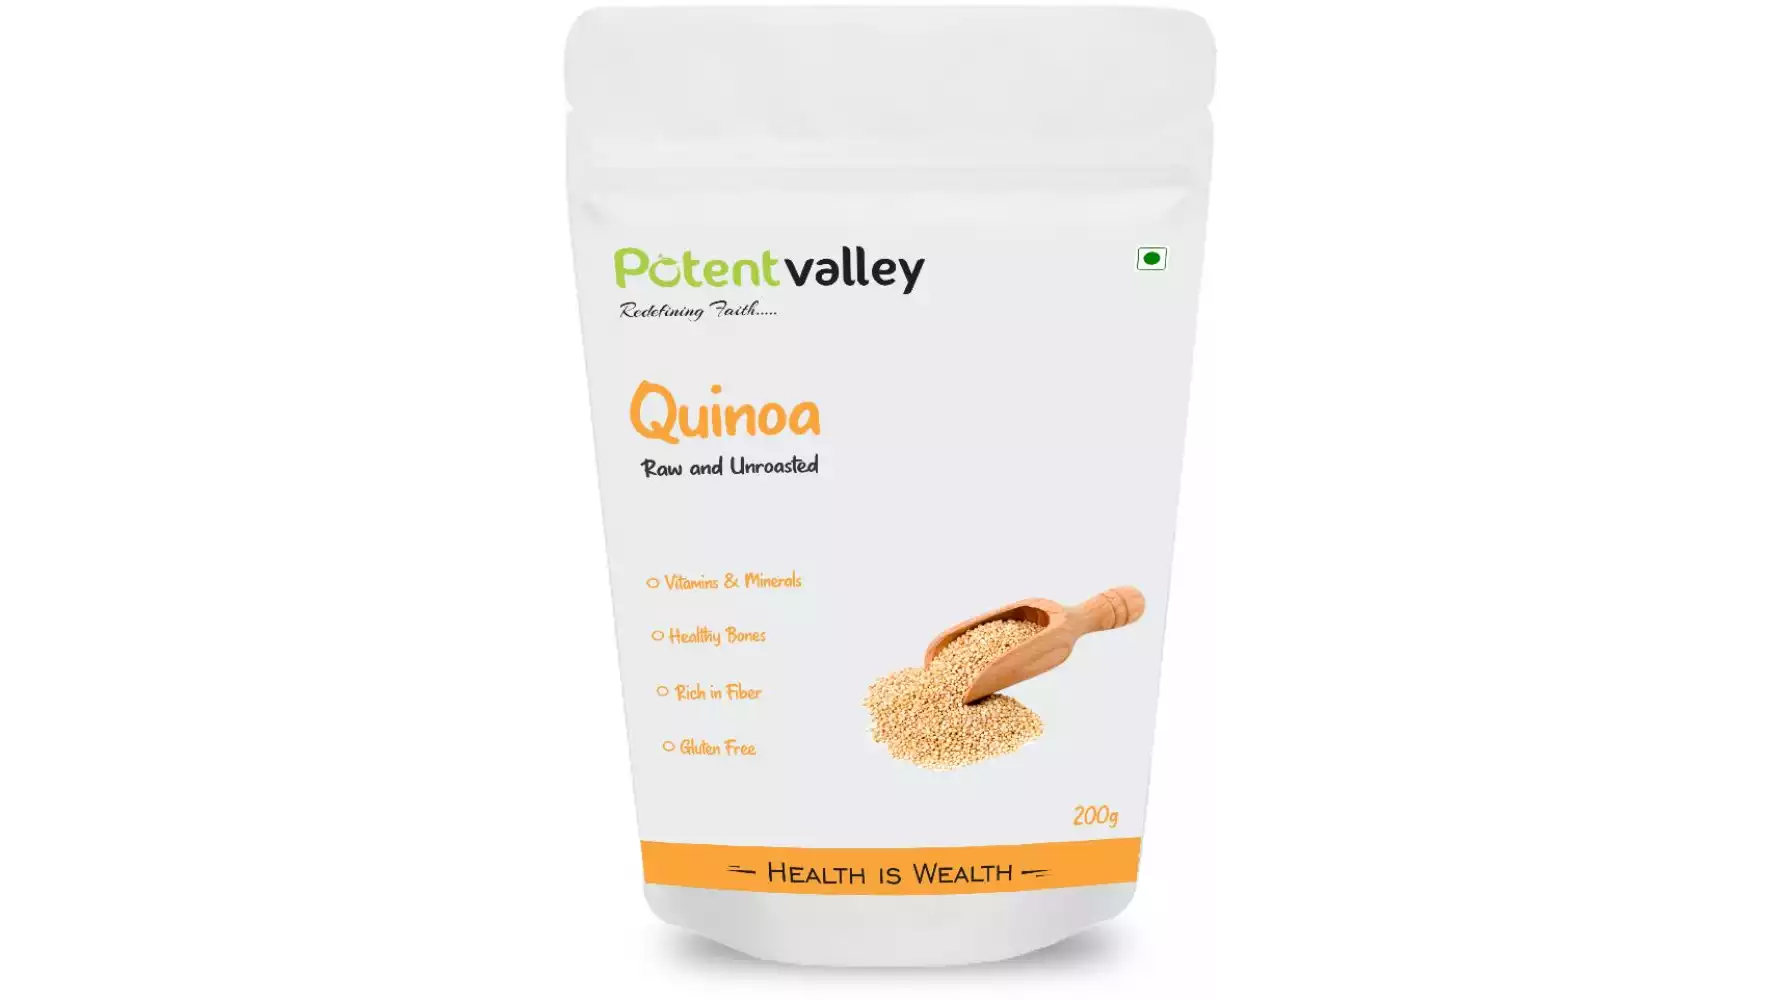 Potentvalley Unroasted Quinoa White Whole Grain Raw Organic (200g)